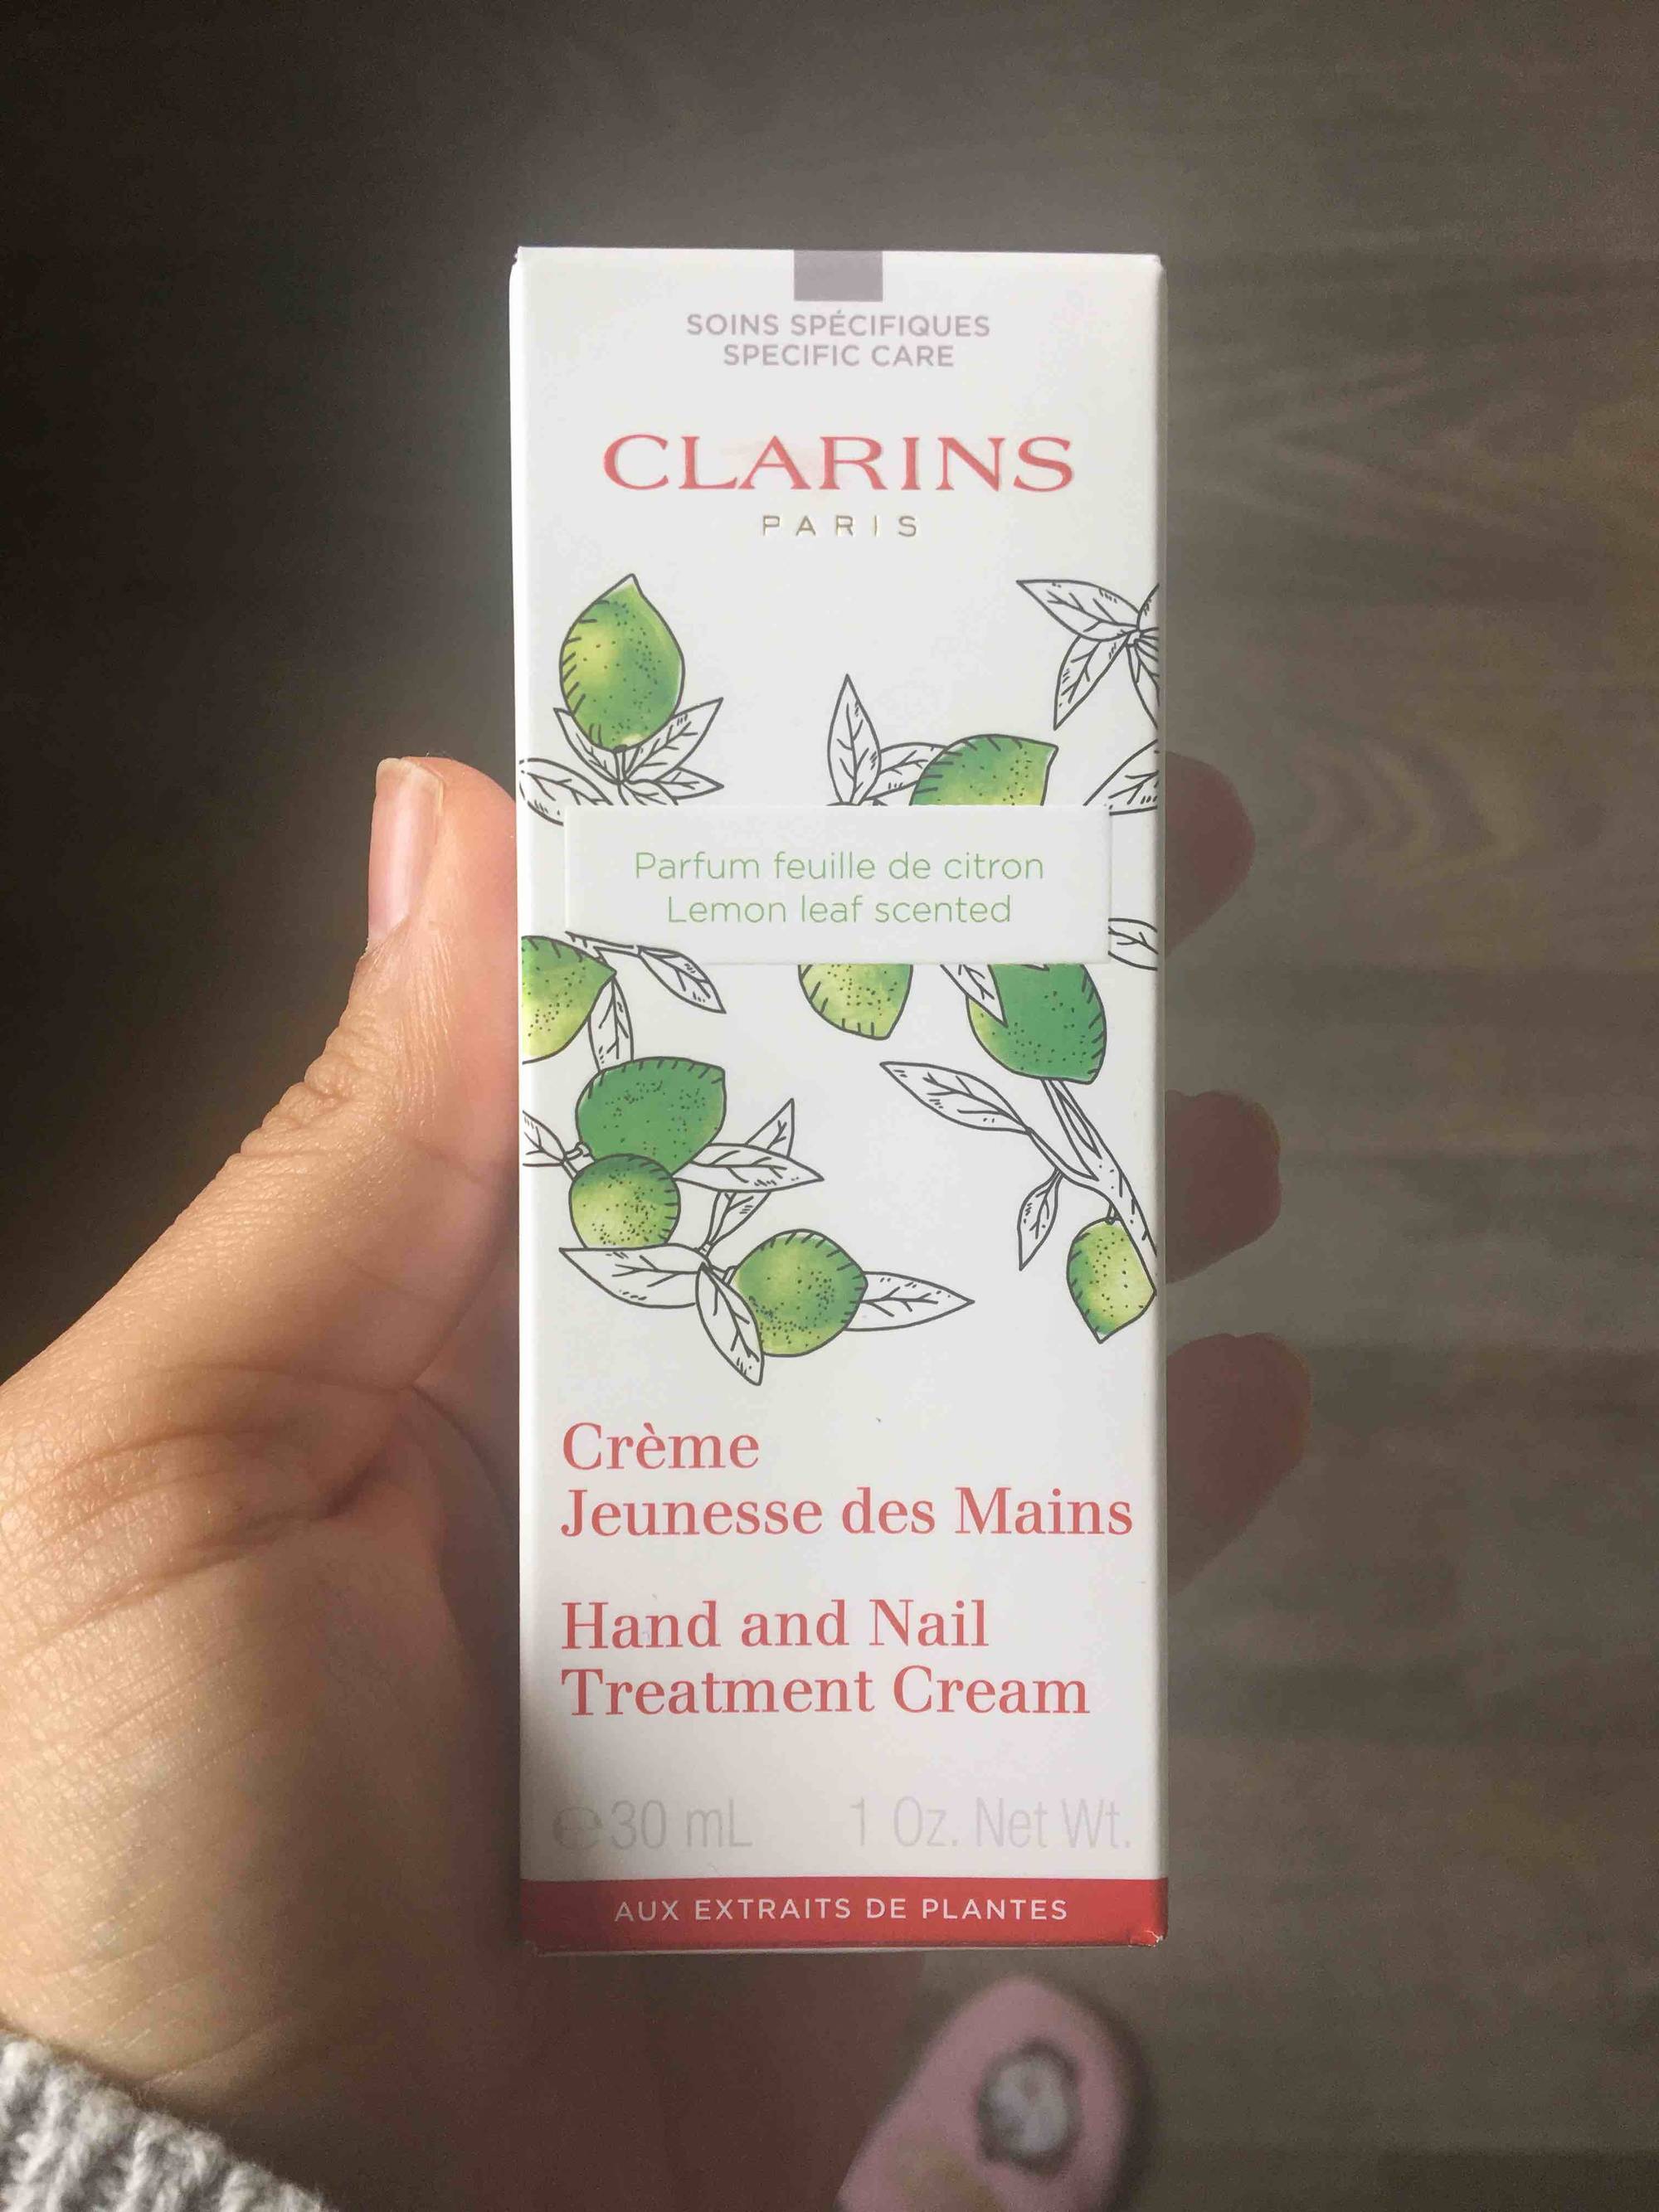 CLARINS PARIS - Crème jeunesse des mains - Parfum feuille de citron